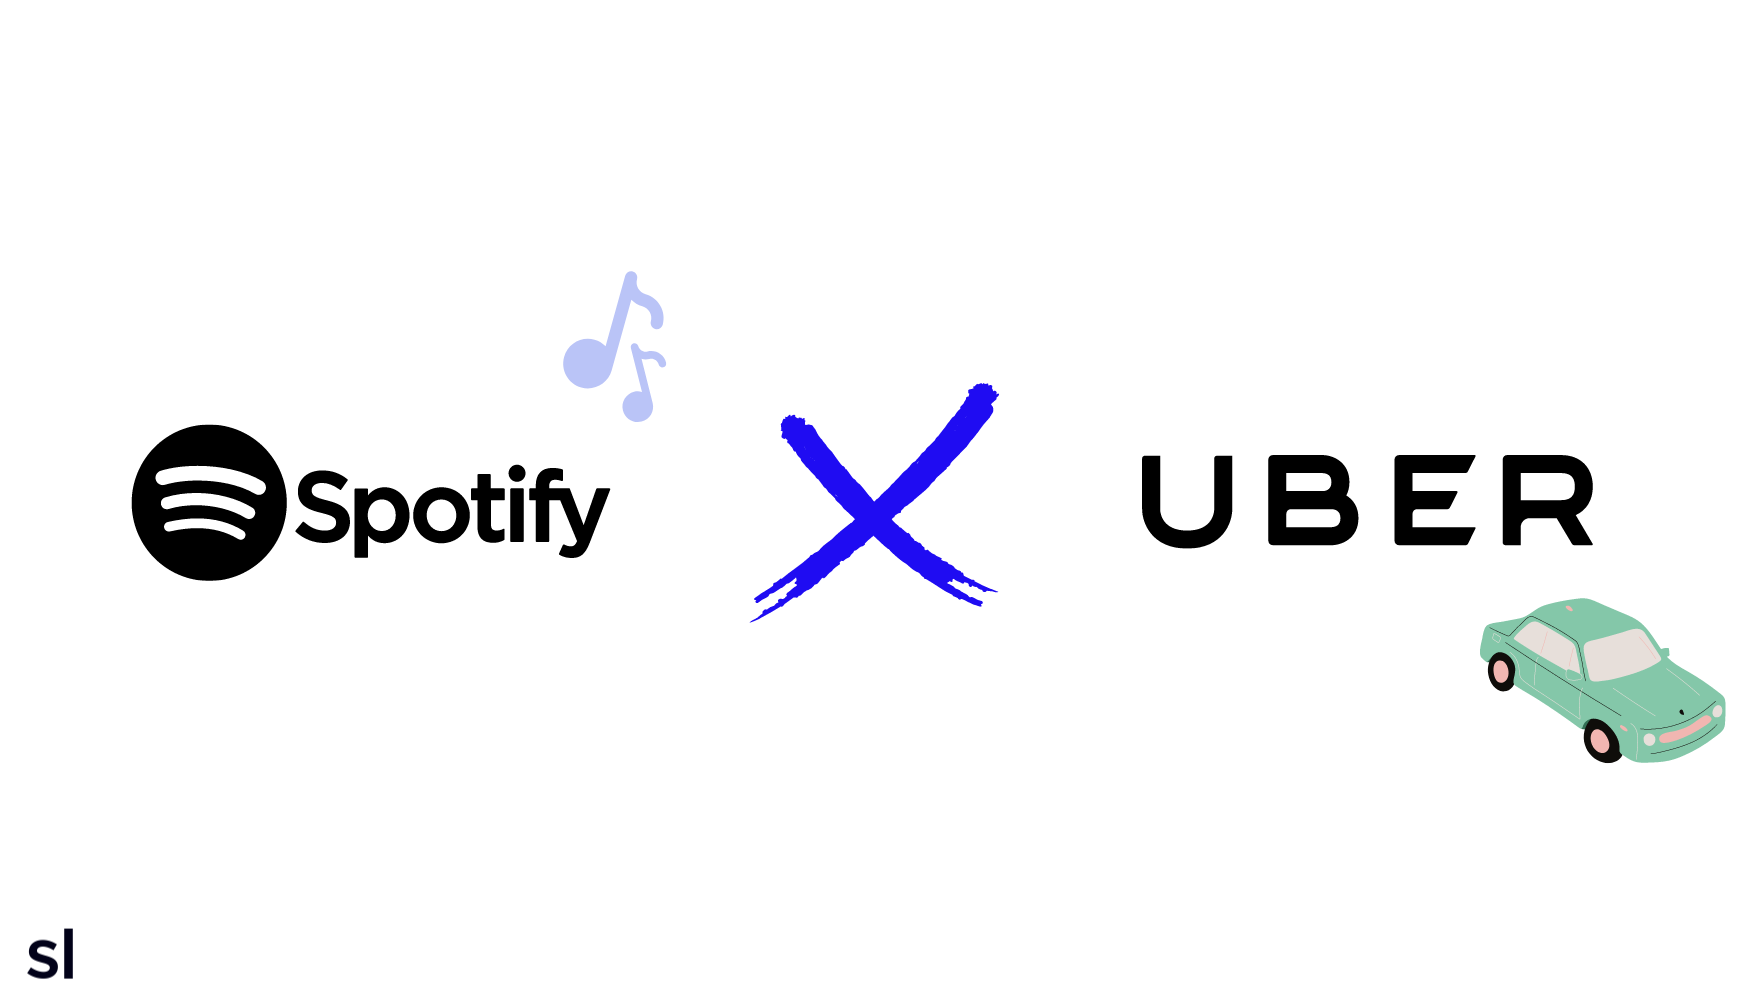 kollaboration zwischen spotify und uber, sortlist